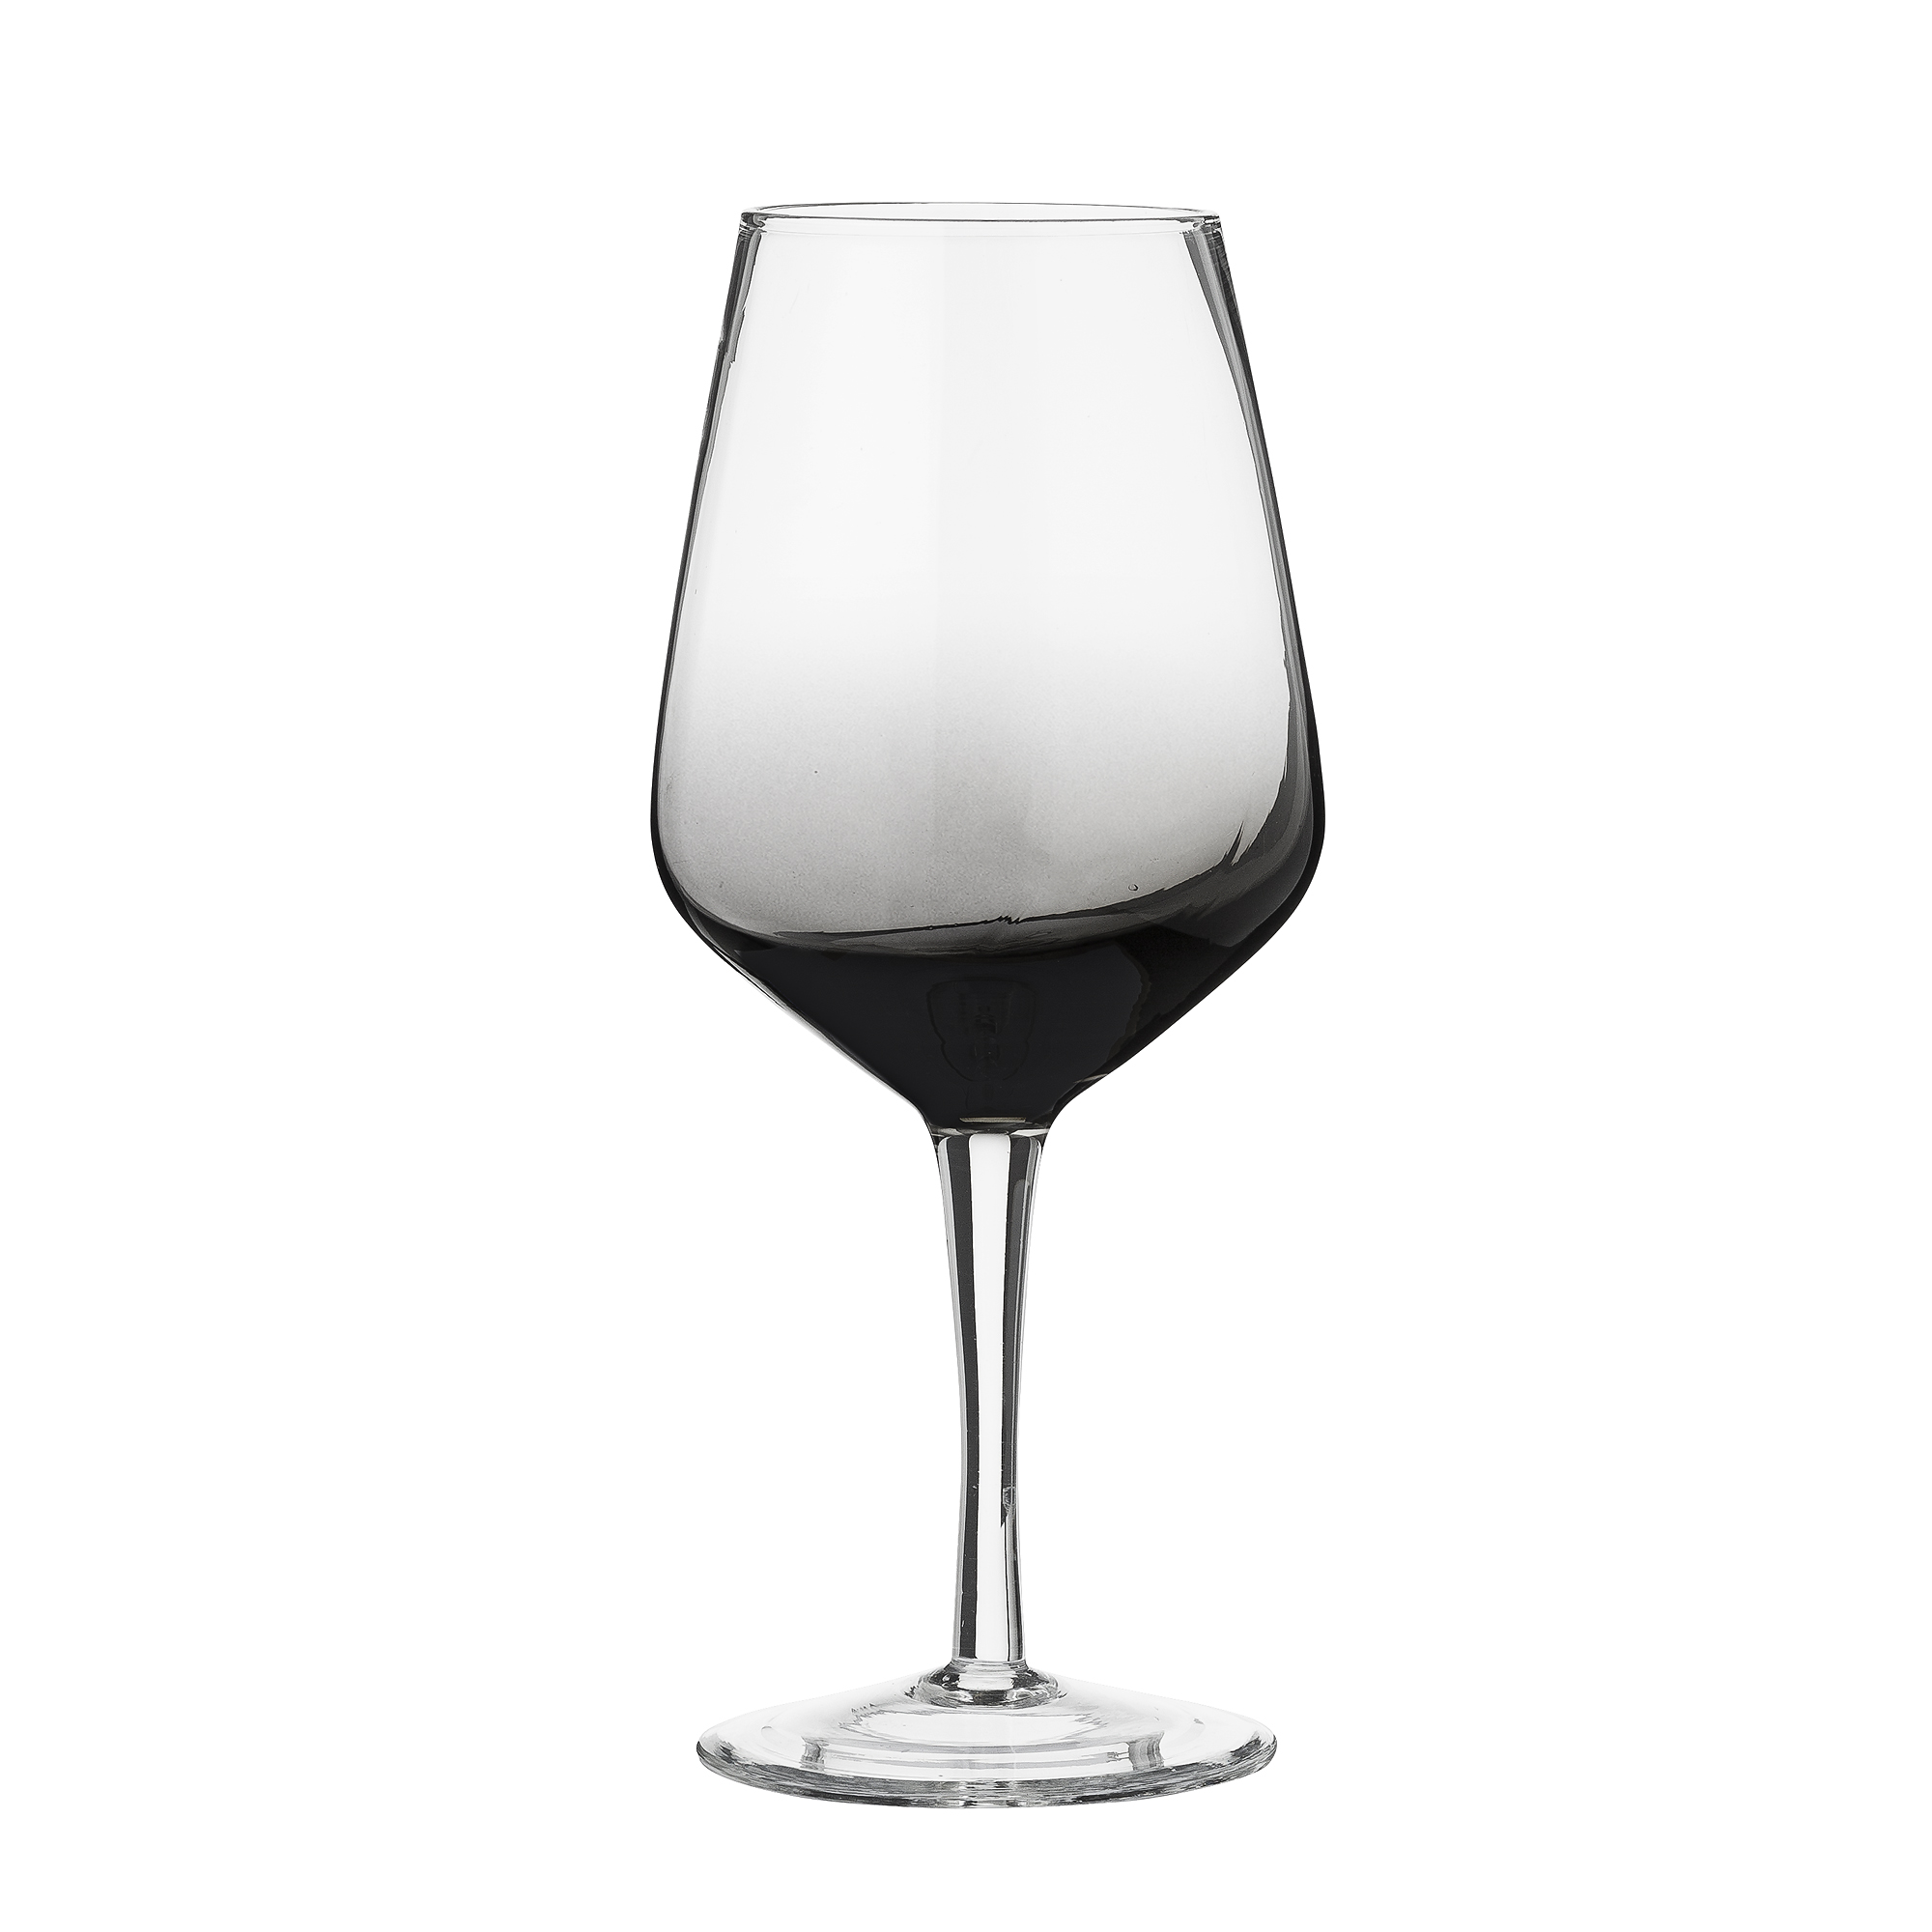 Vínový pohár s kouřovým efektem, průměr 6,5 cm, výška 21,5 cm, 18 €/1 ks, www.bloomingville.com